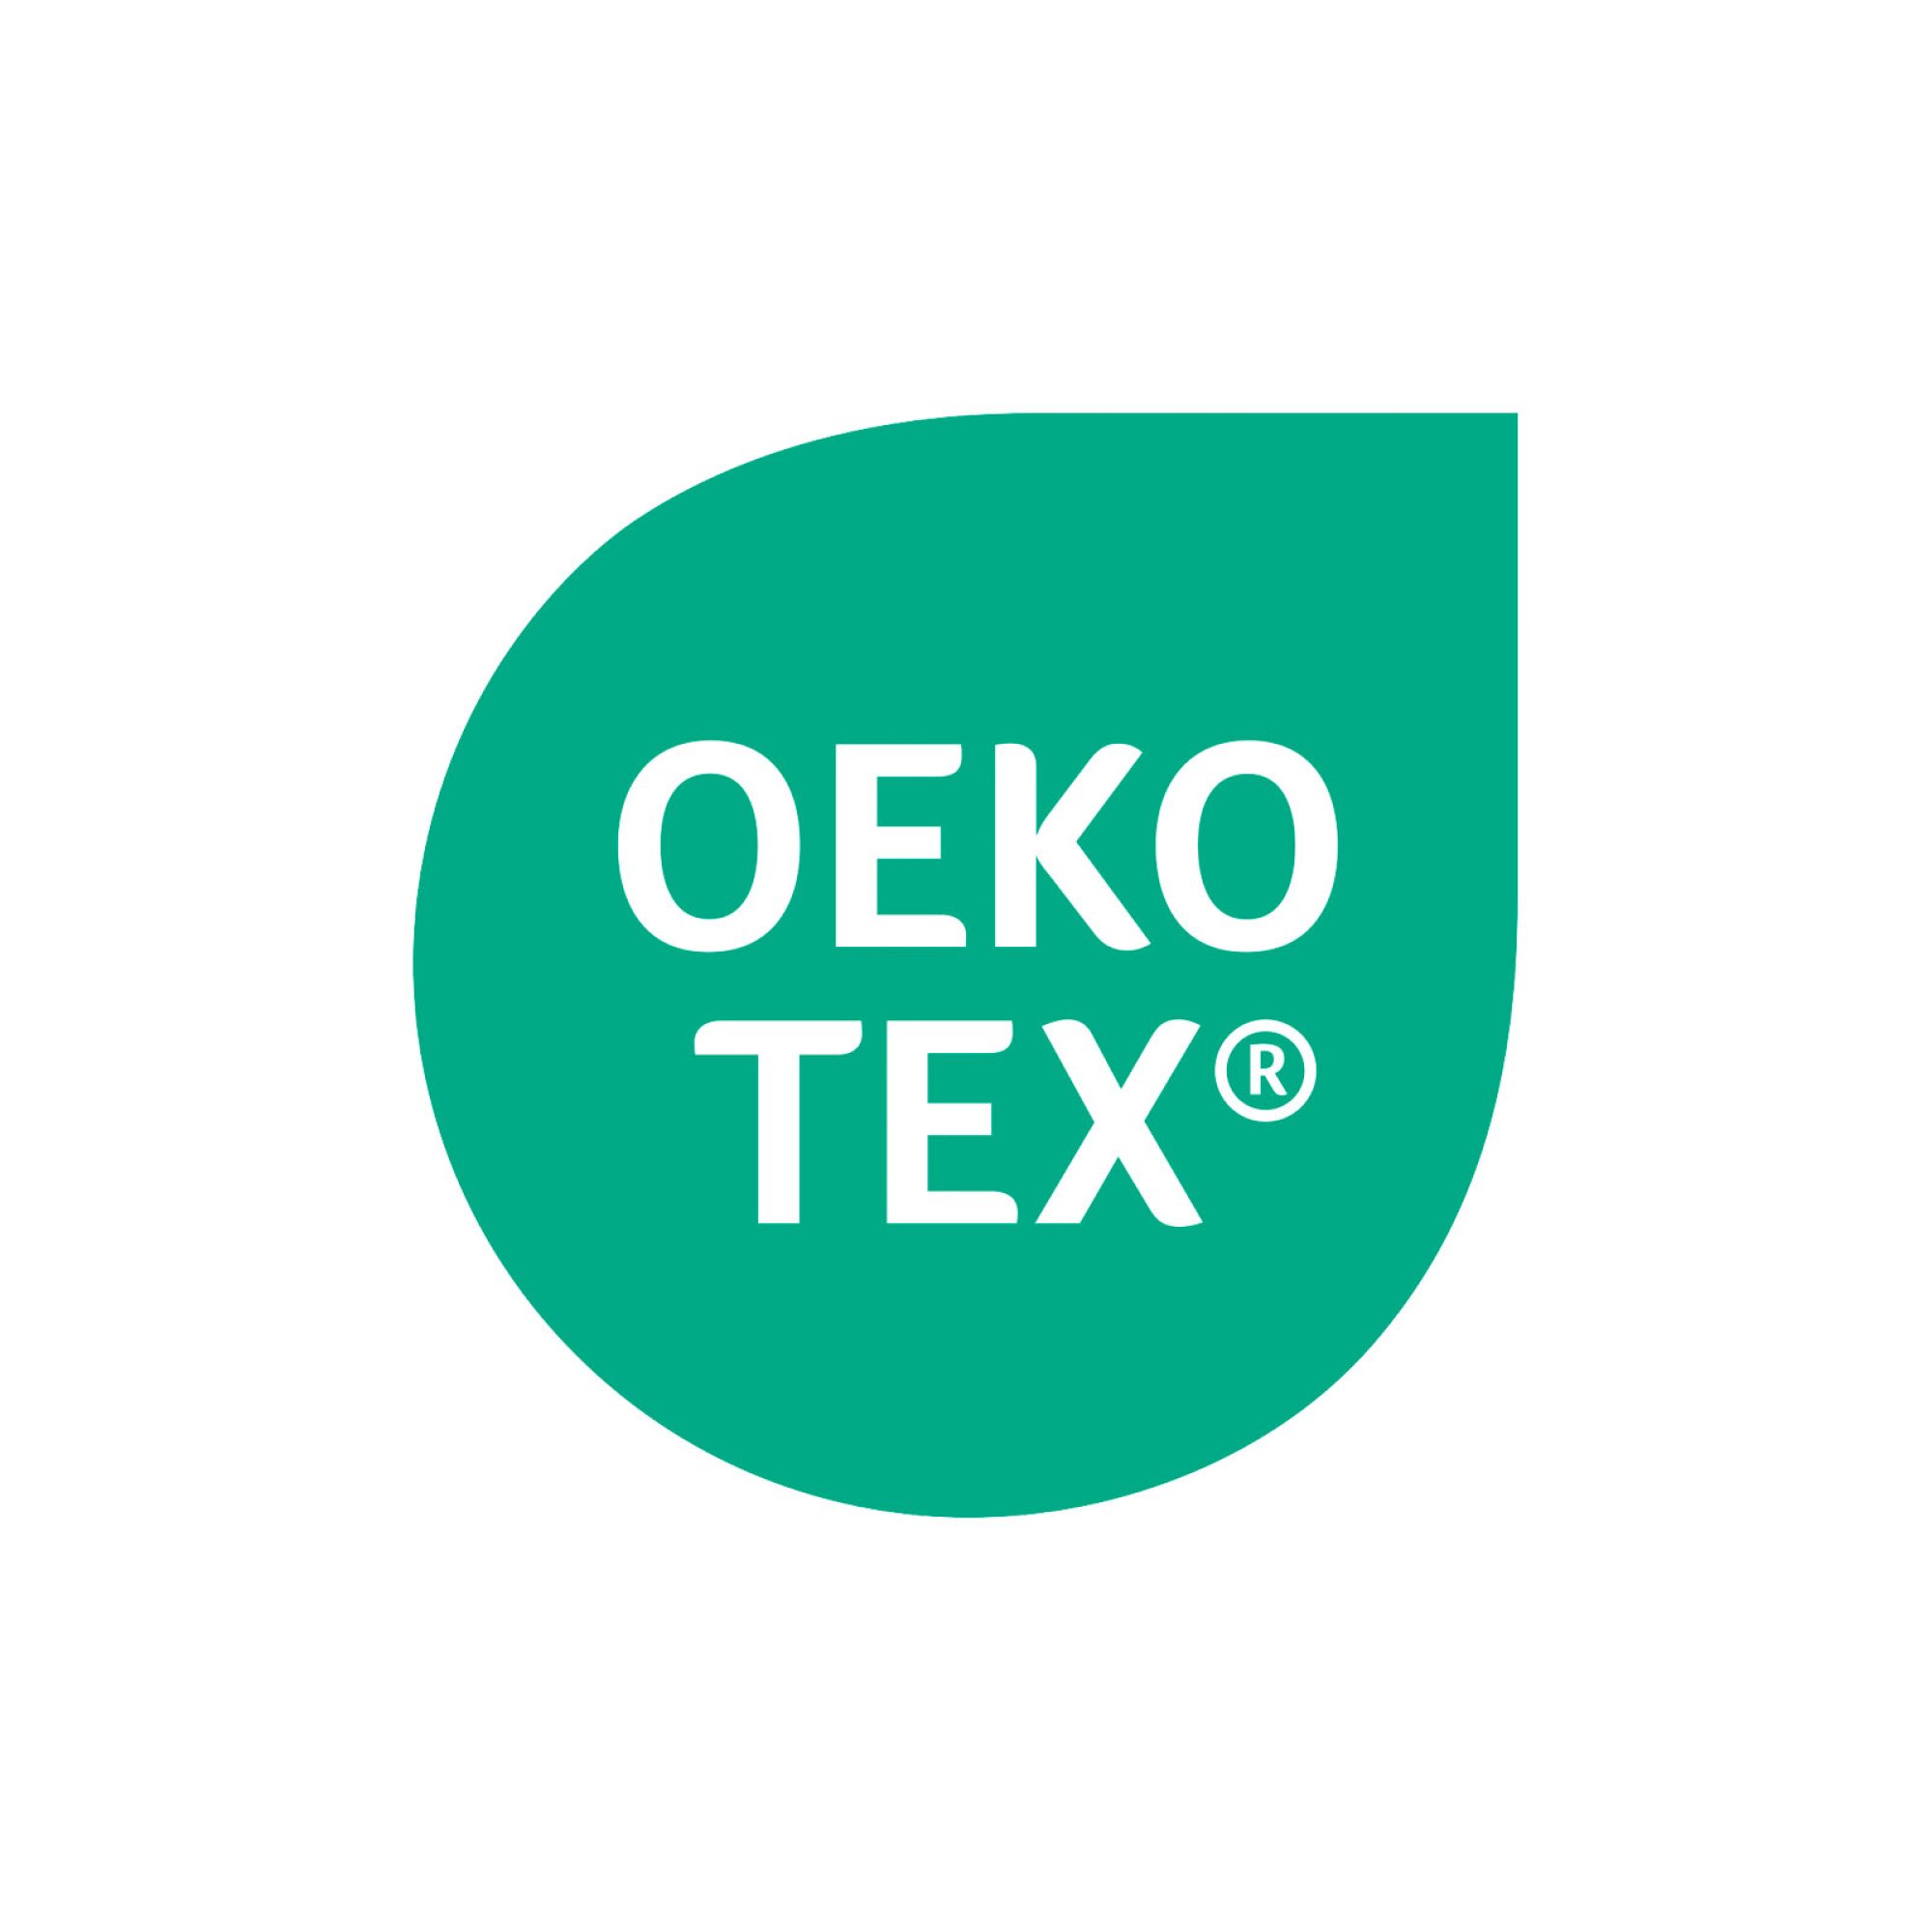 O-que-é-a-certificação-OEKO-TEX-season-home-collection